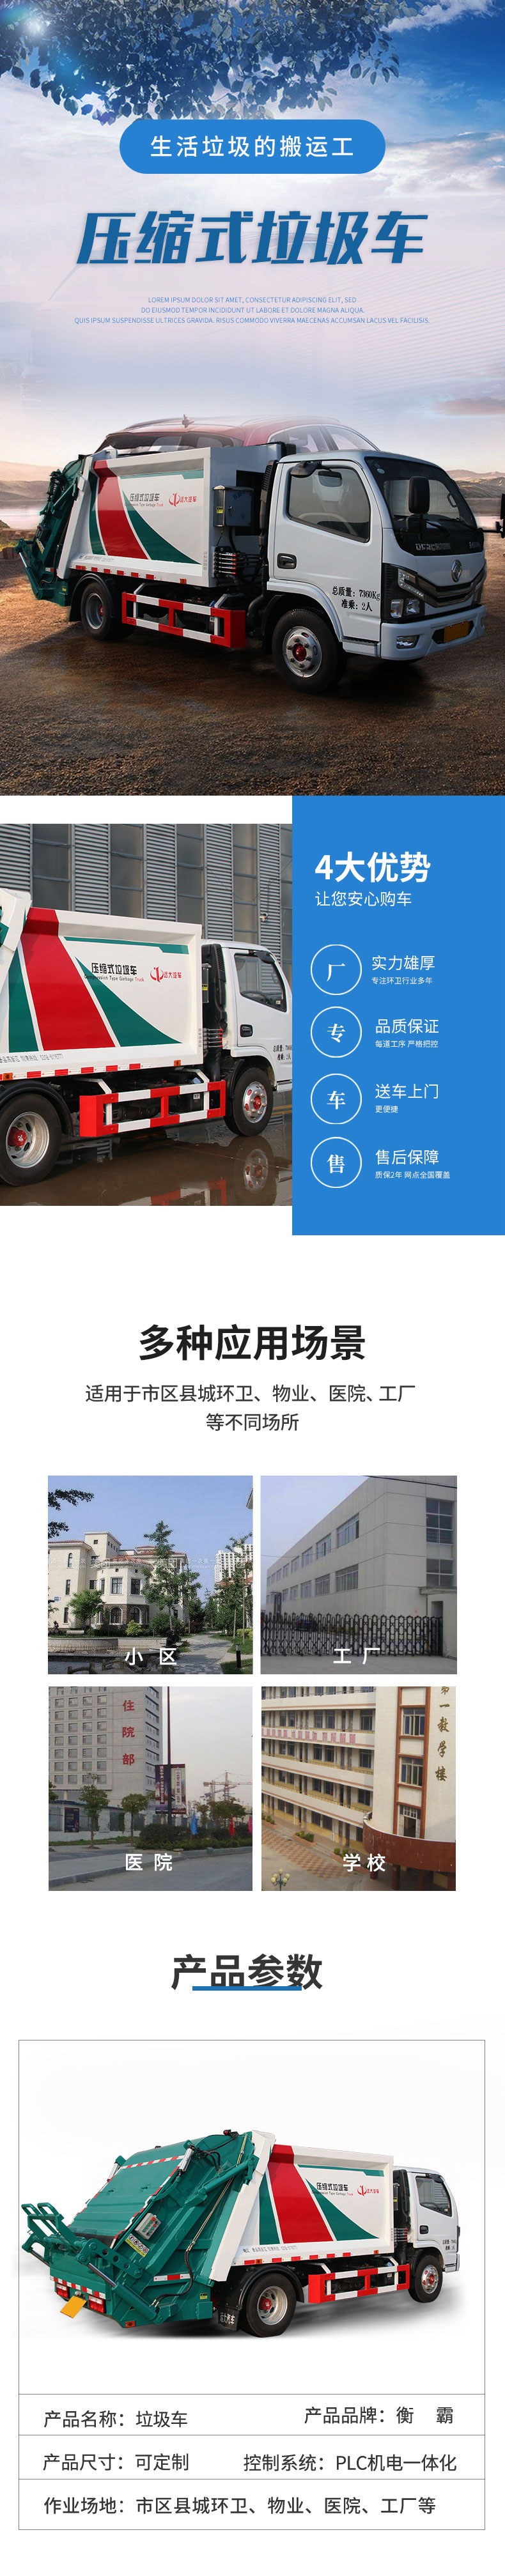 米乐m6官网app登录入口